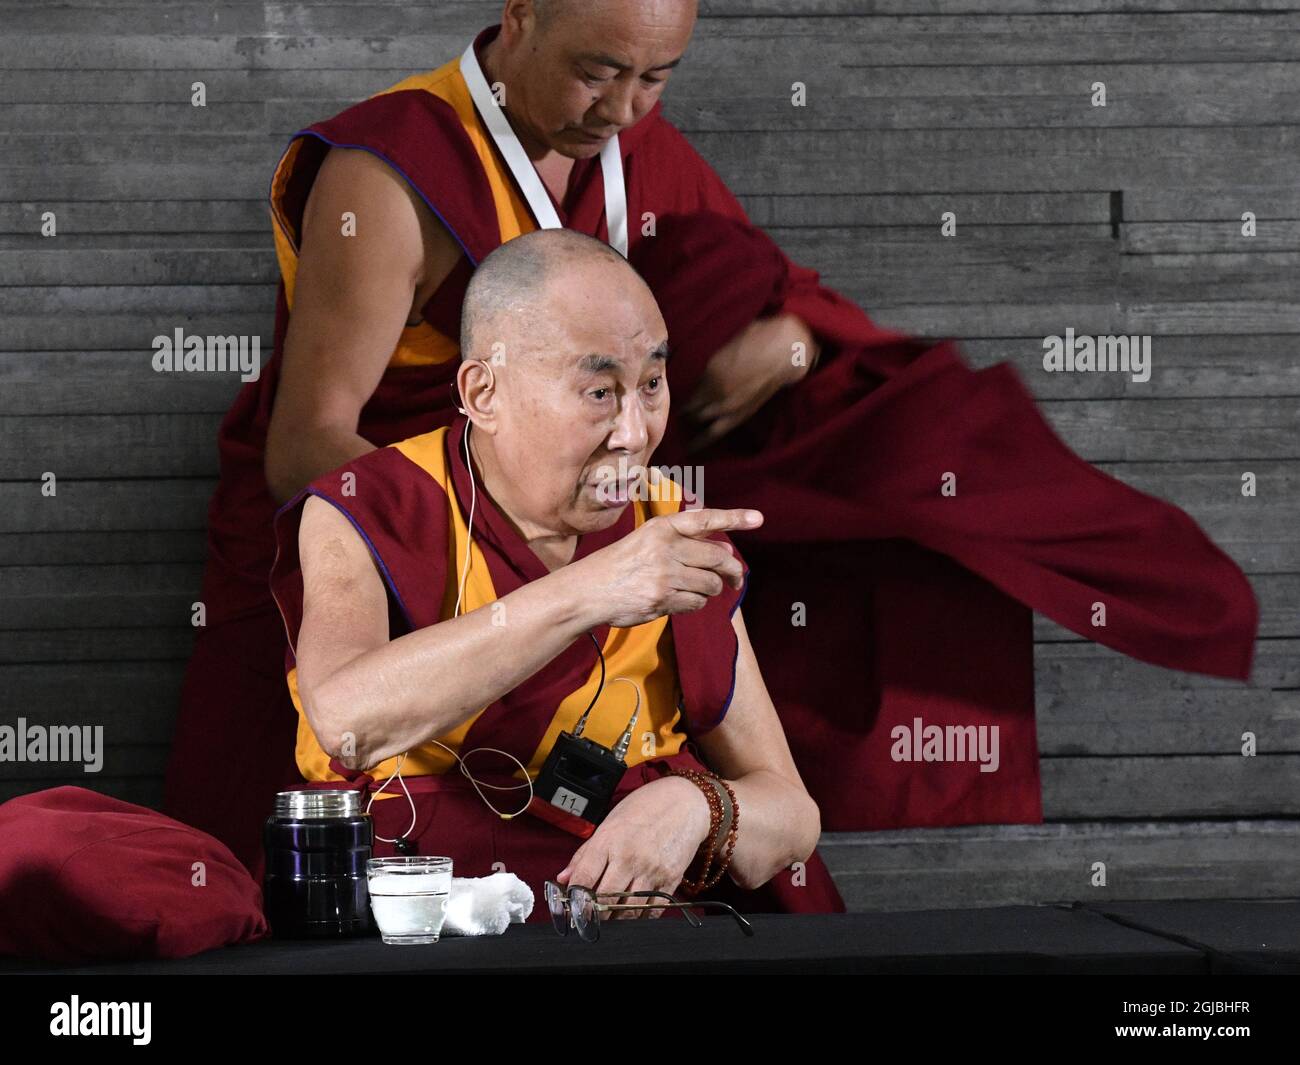 MALMO 2018-09-12 sua Santità il 14° Dalai lama è visto durante una conferenza stampa a Malmo, Svezia nel settembre. 9, 2018. Dalai lama è in Svezia per dare la lezione -l'arte della felicità e della pace-. Foto: Johan Nilsson / TT / Kod 50090 Foto Stock